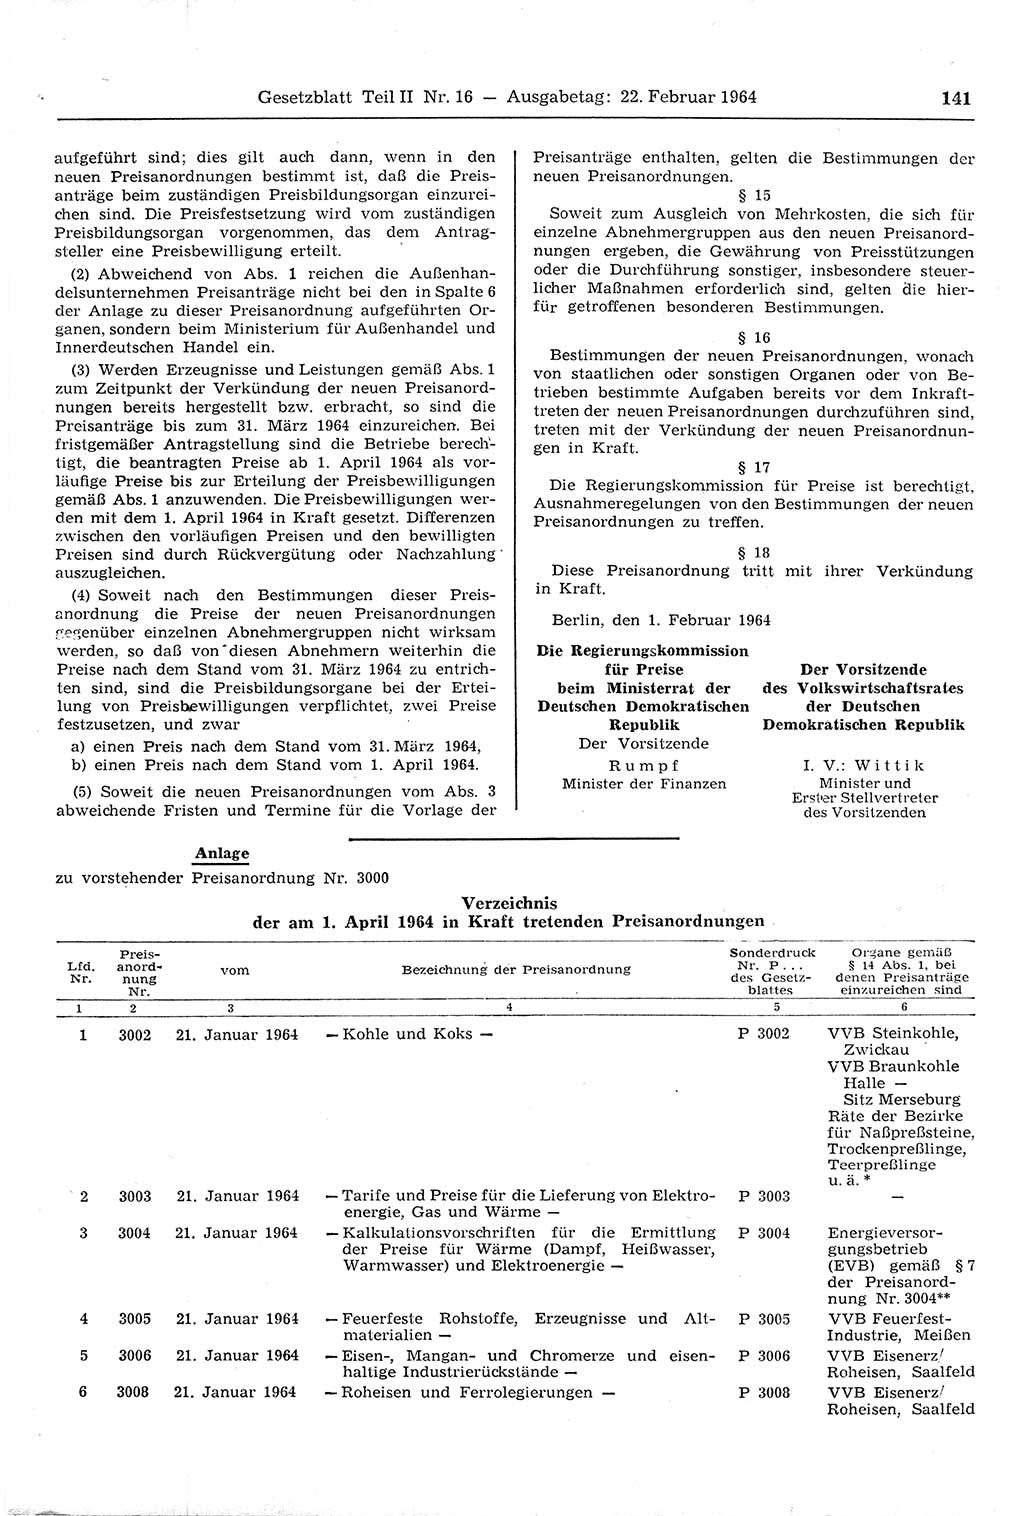 Gesetzblatt (GBl.) der Deutschen Demokratischen Republik (DDR) Teil ⅠⅠ 1964, Seite 141 (GBl. DDR ⅠⅠ 1964, S. 141)